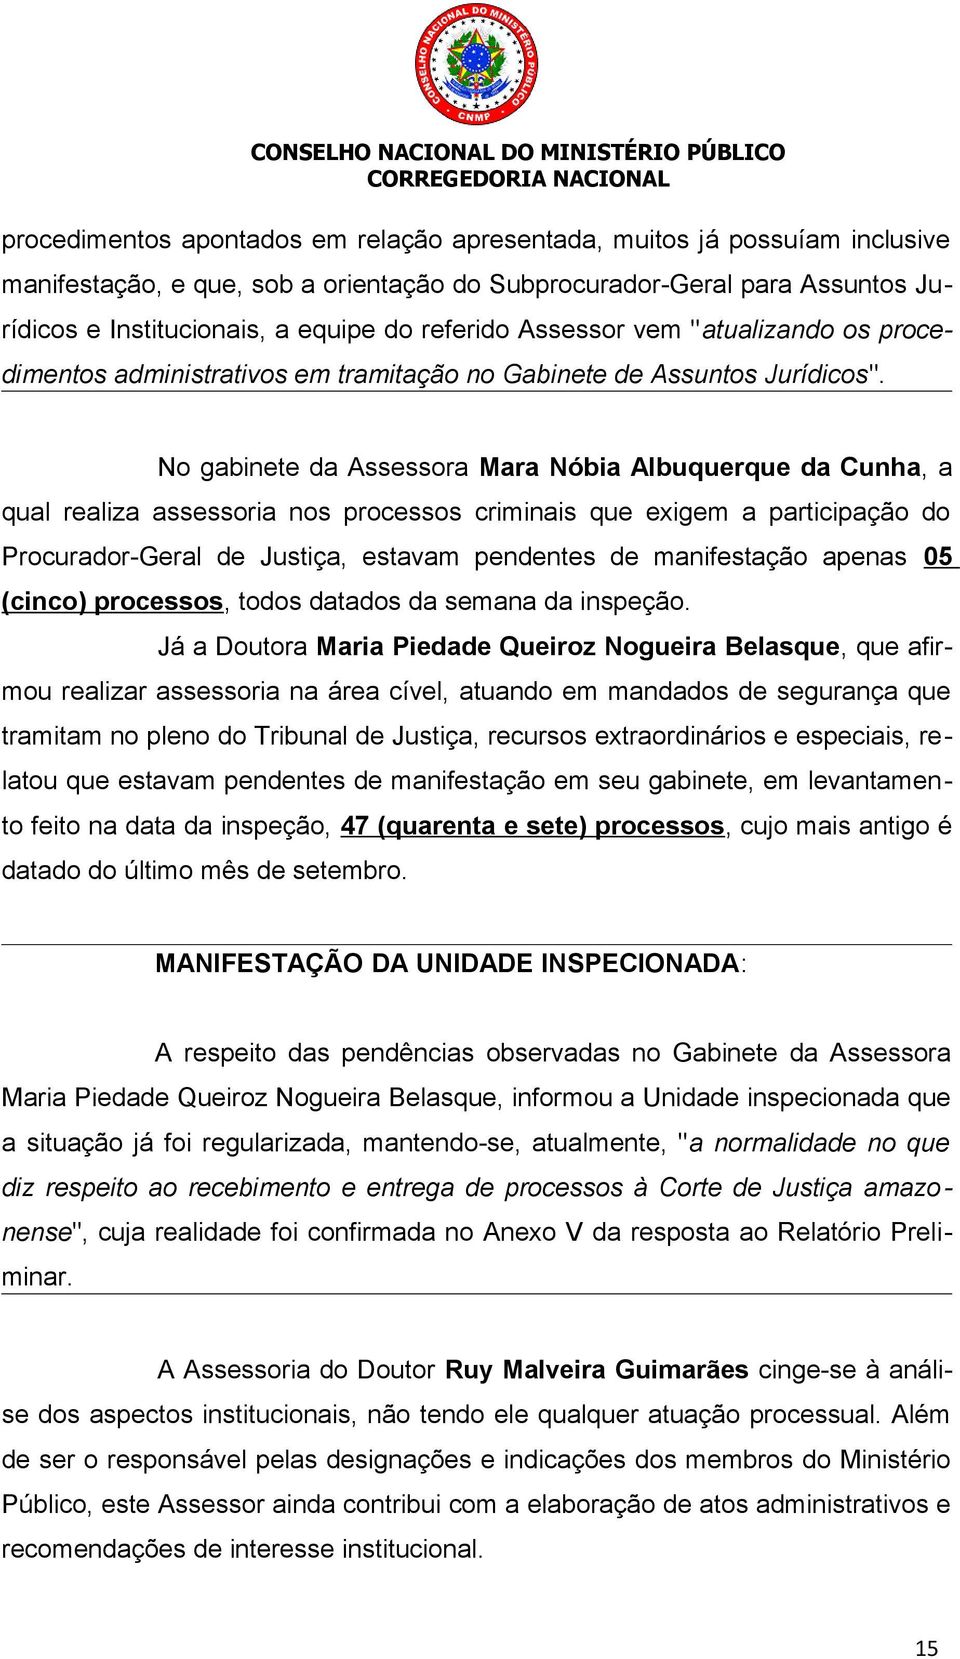 No gabinete da Assessora Mara Nóbia Albuquerque da Cunha, a qual realiza assessoria nos processos criminais que exigem a participação do Procurador-Geral de Justiça, estavam pendentes de manifestação